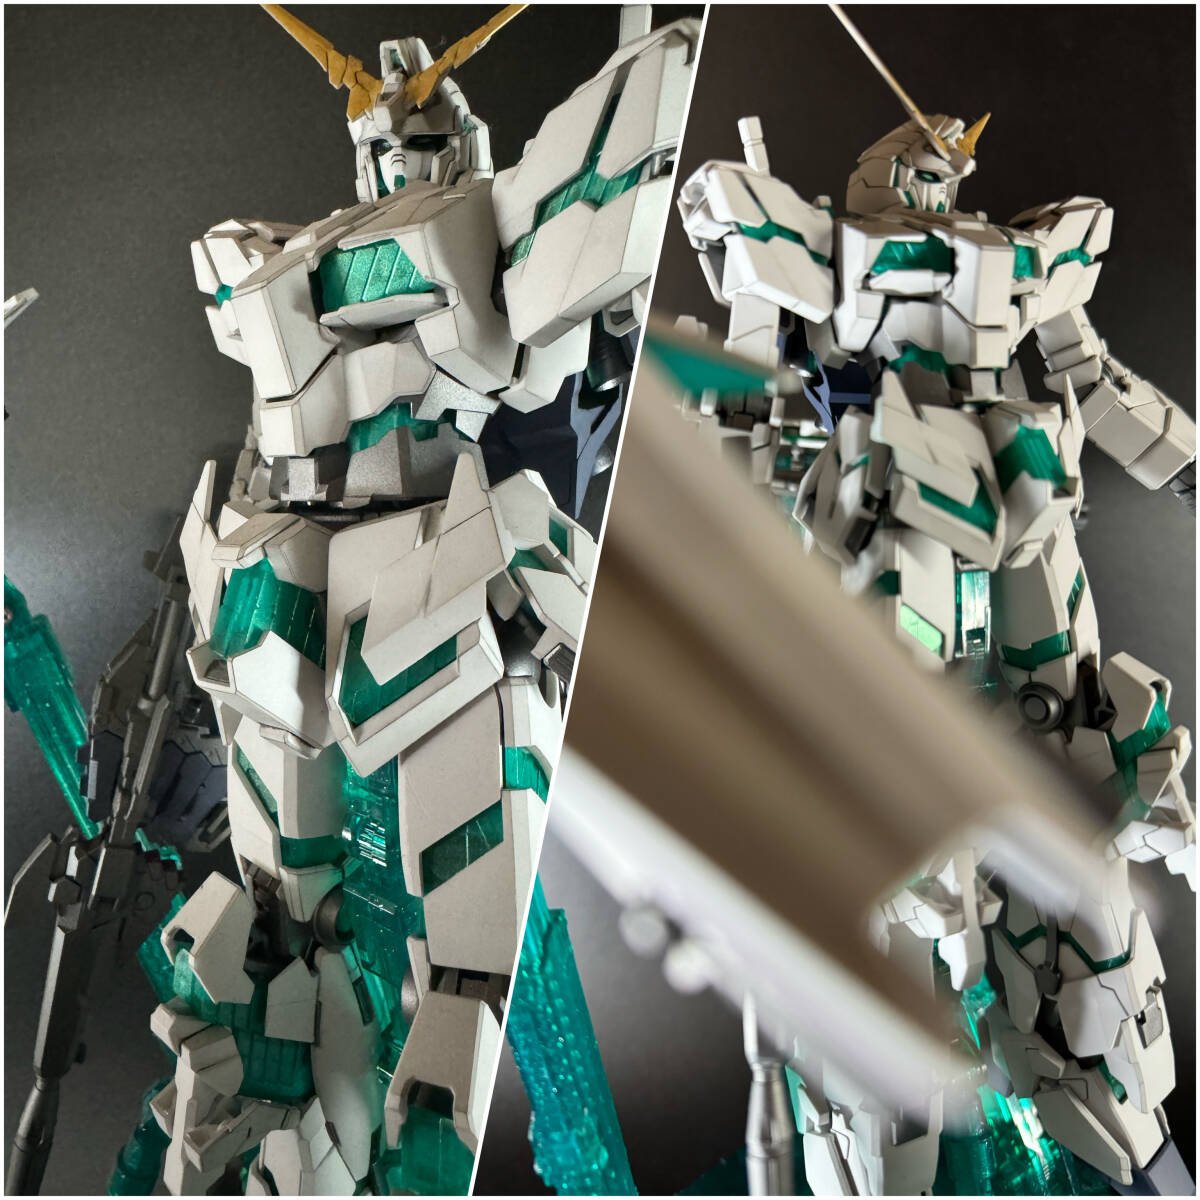 MG 1/100 RX-0 Full Armor Unicorn Gundam Ver.Ka Final Battle Спецификация Окрашенный готовый продукт, характер, Гандам, Готовый продукт